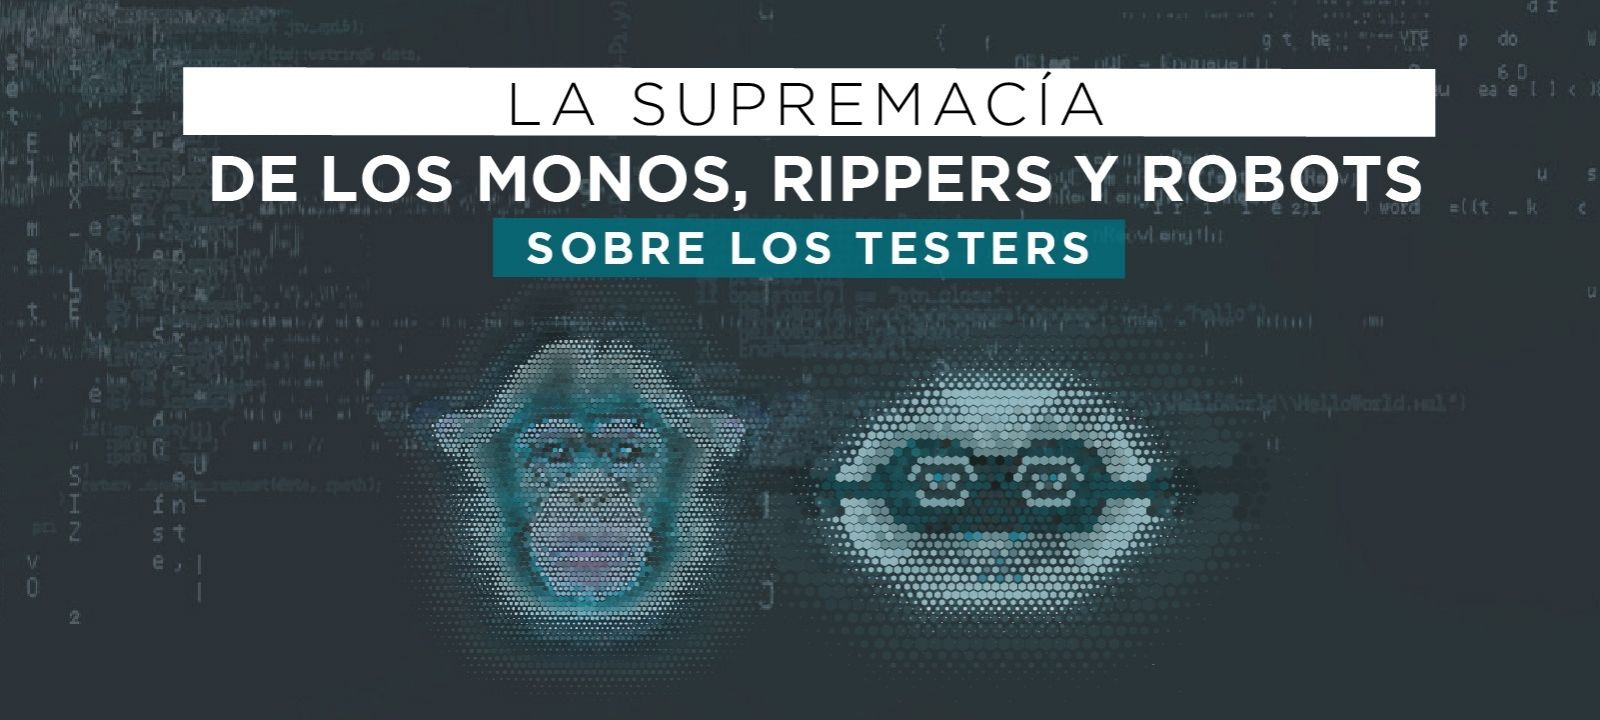 La supremacía de los monos, rippers y robots sobre los testers